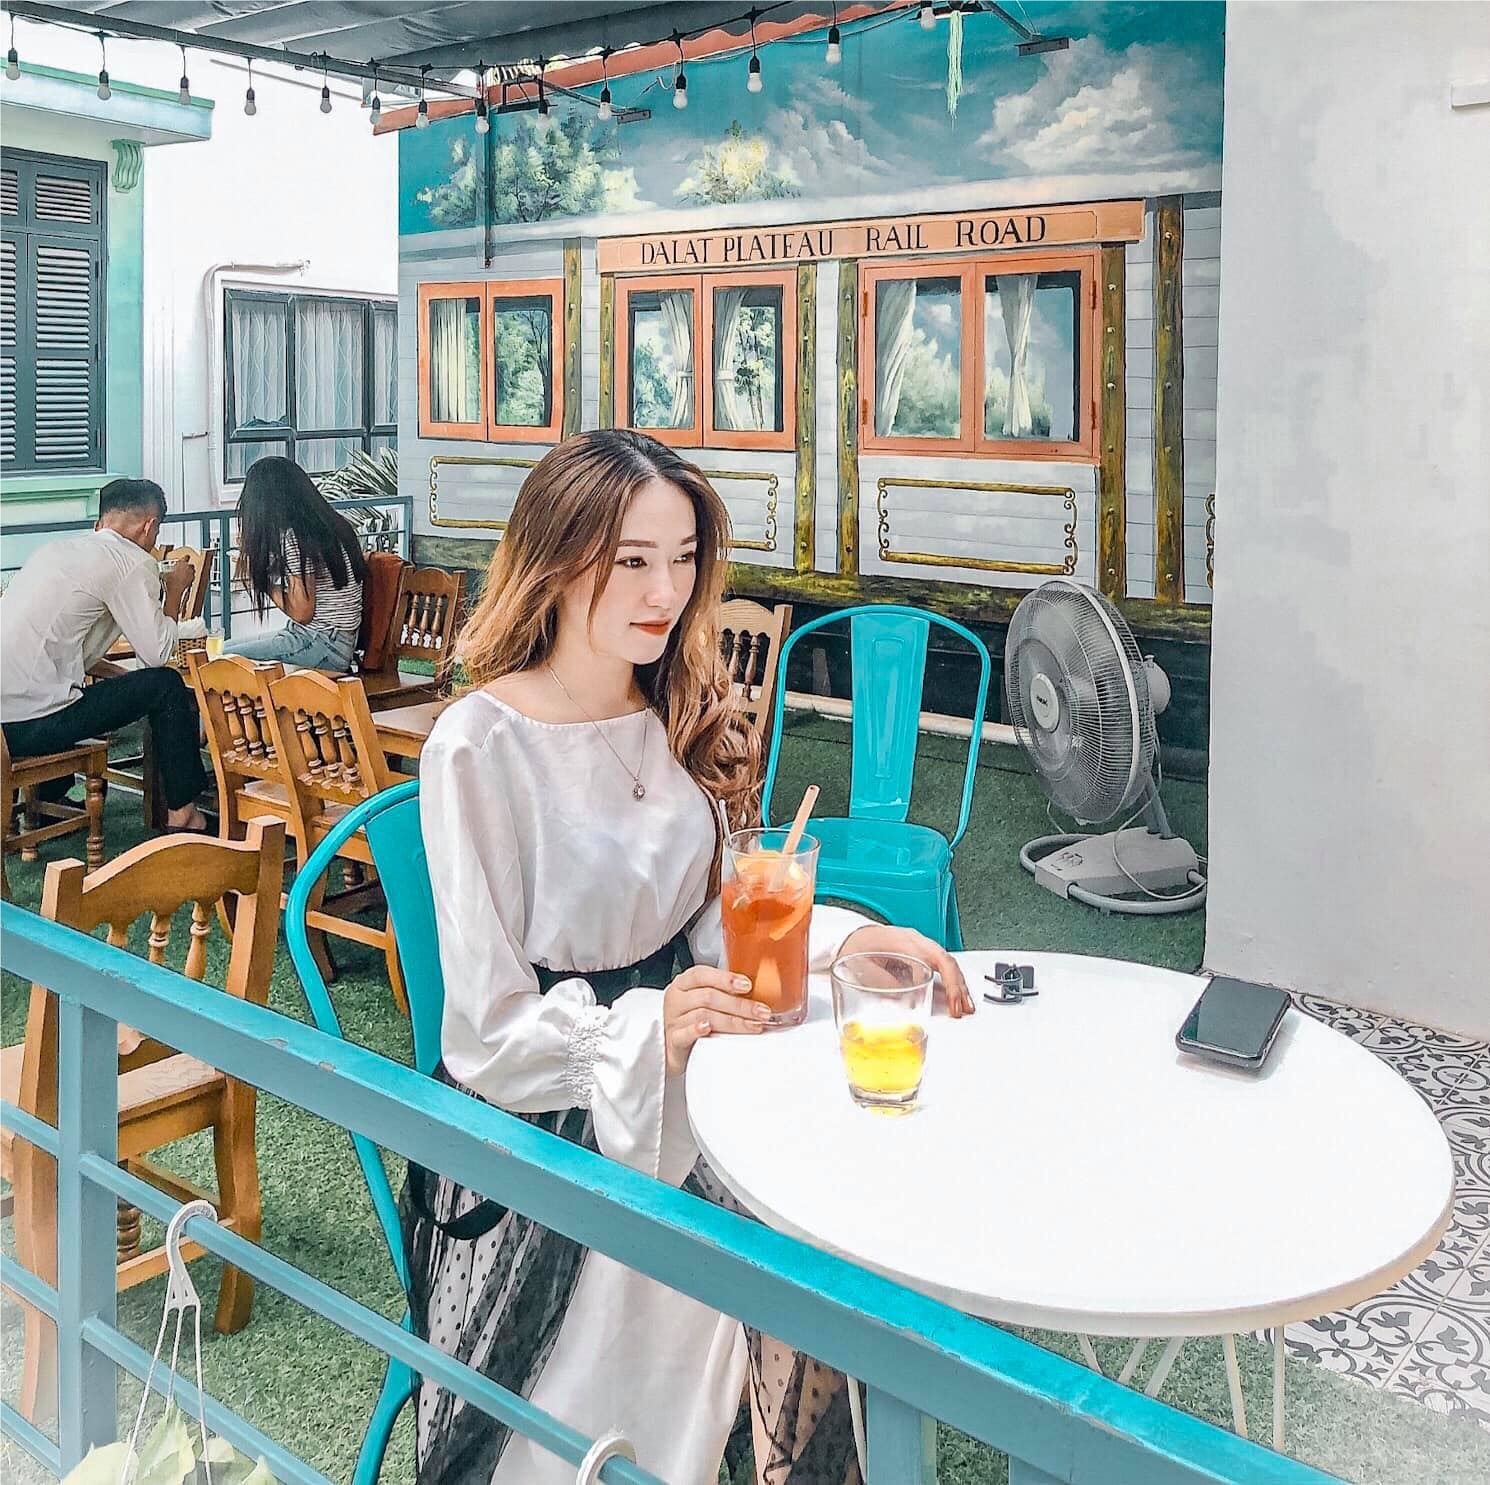 Ghé thăm 4 quán cafe đậm chất Đà Lạt ở Hà Nội